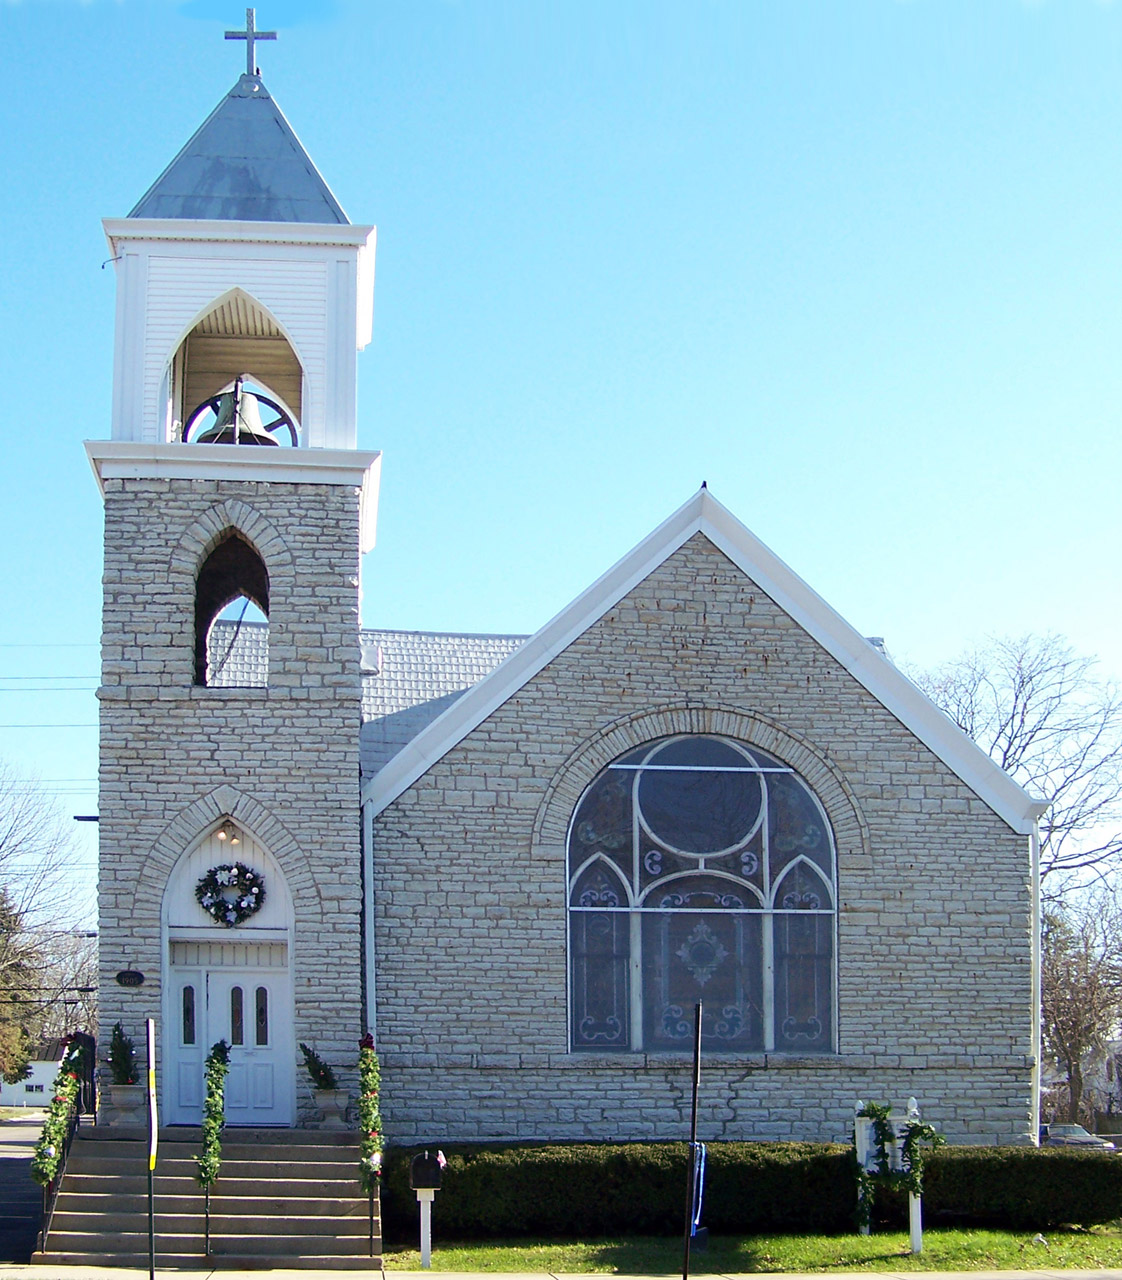 Small-town church at Christmas